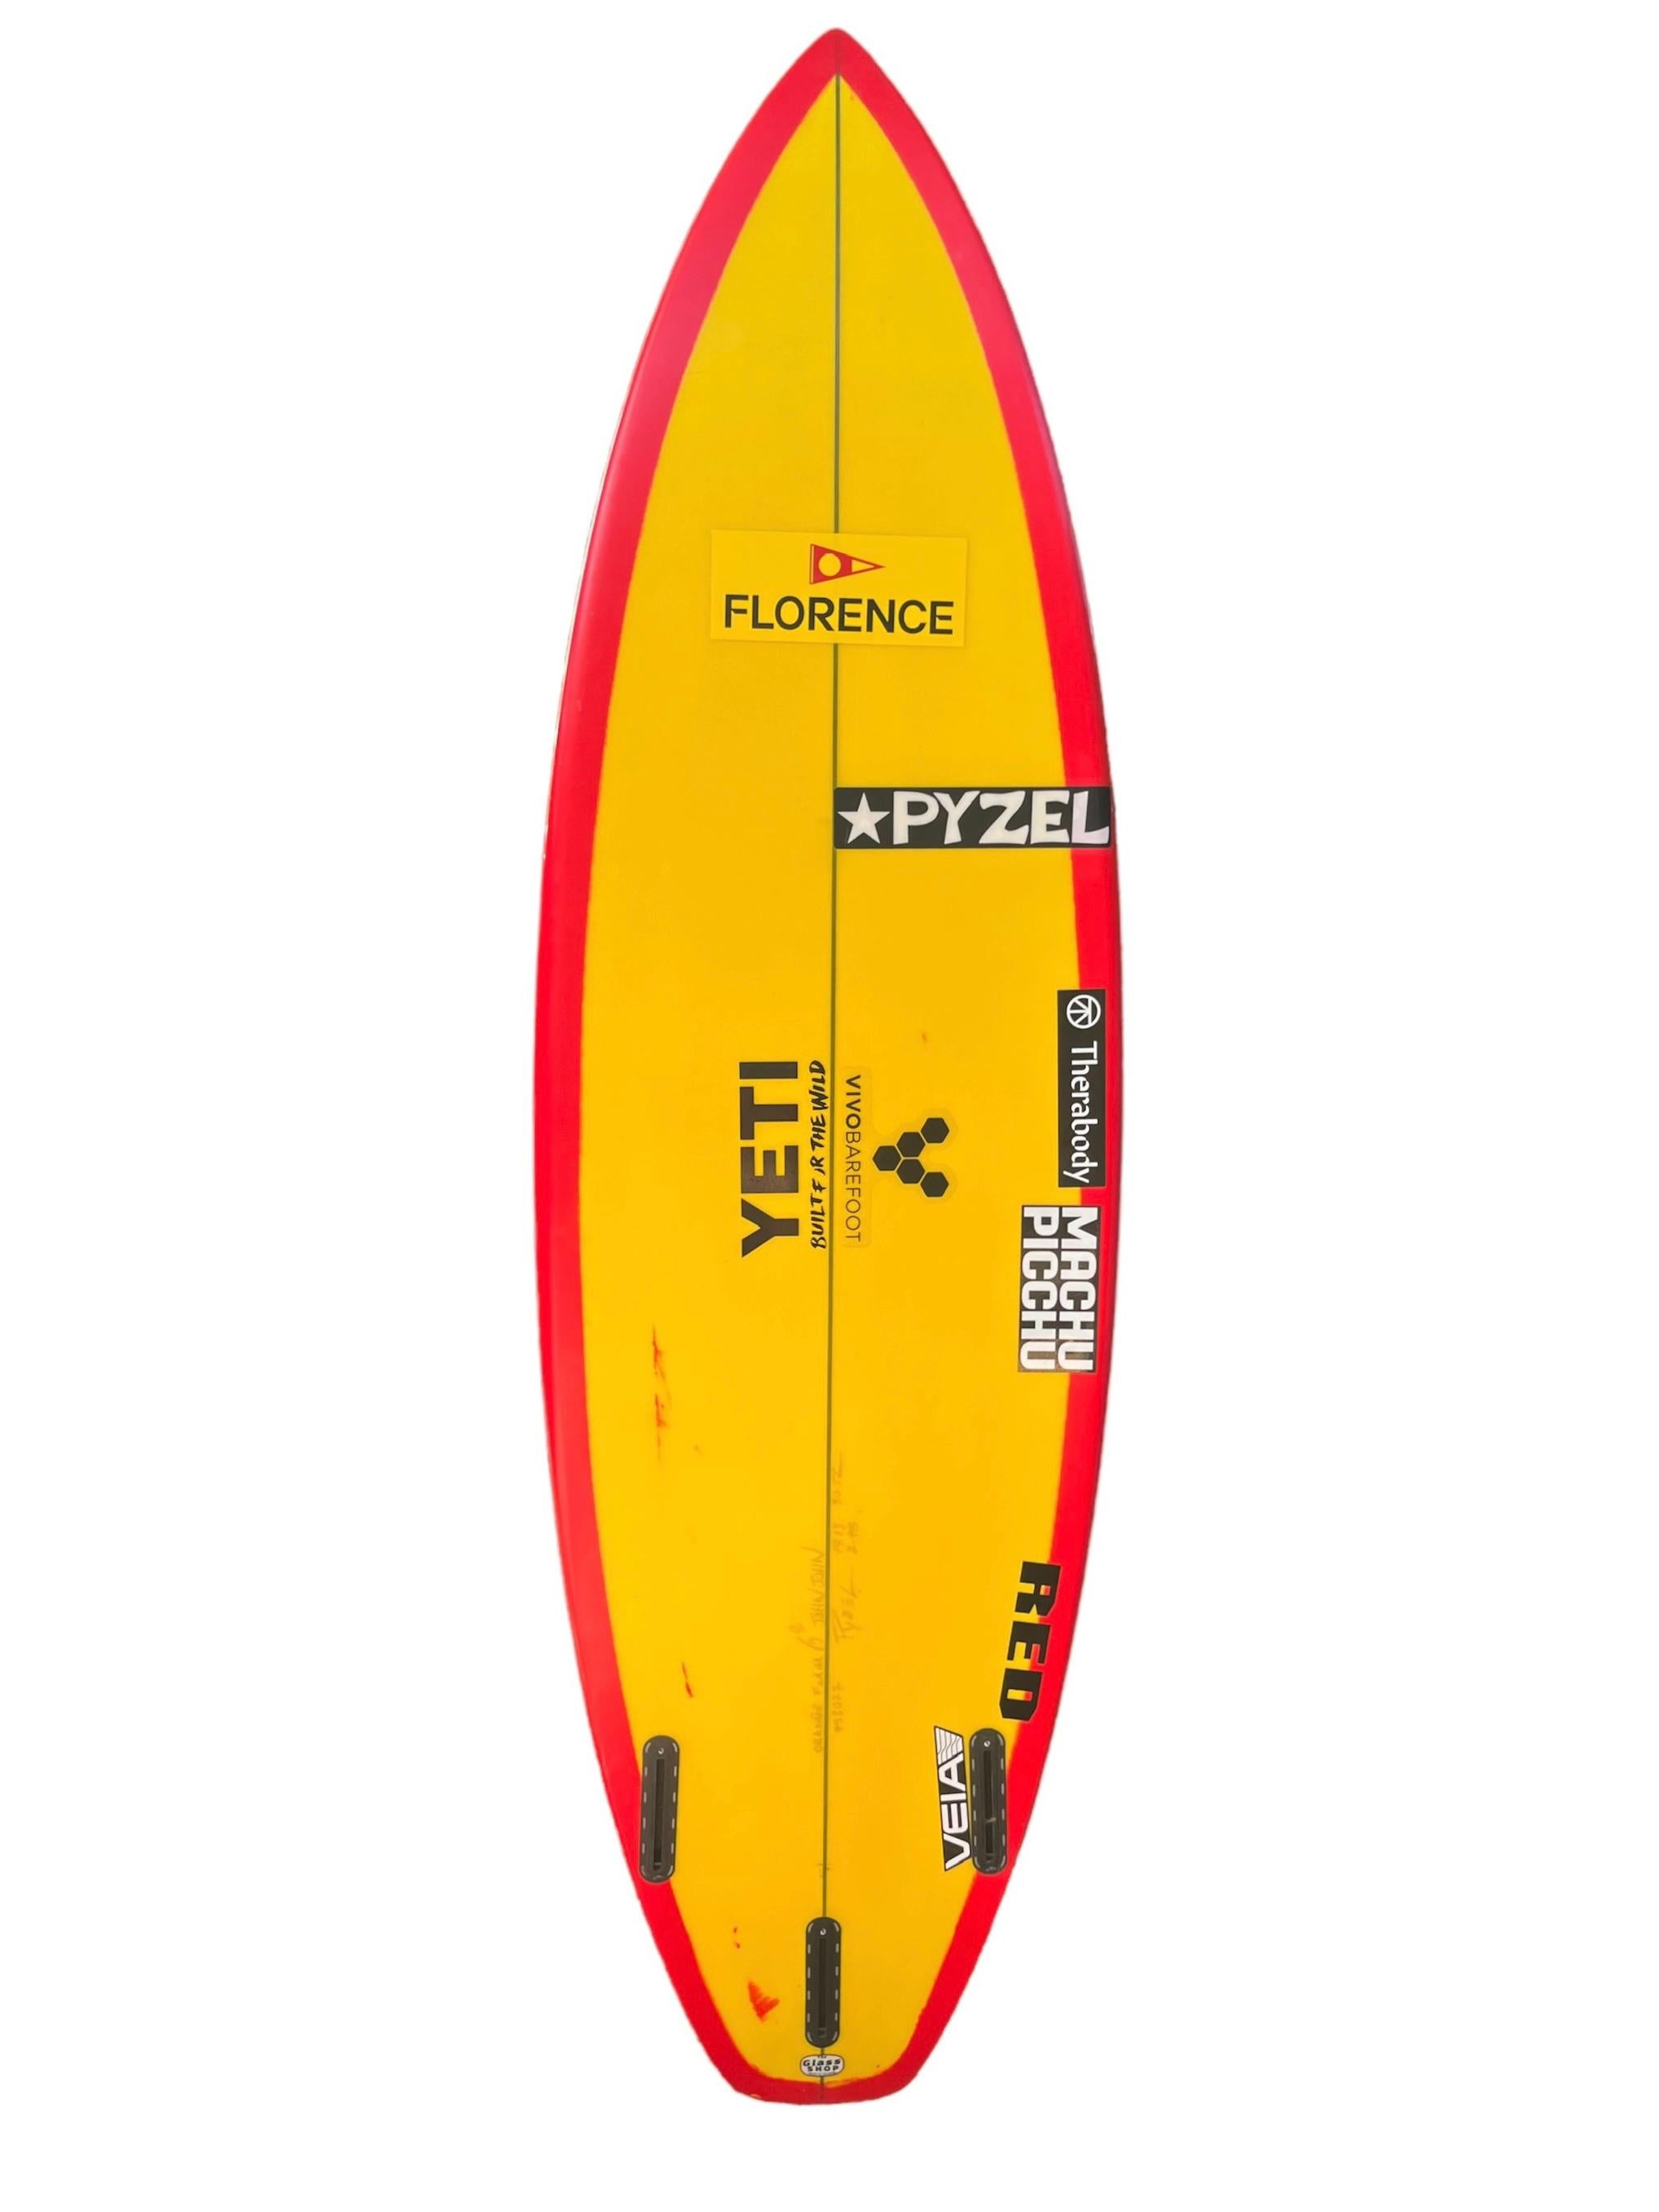 2X World Champion John John Florence's personal surfboard shaped by Jon Pyzel. Rails en tint/wrapped rouge vif, fond jaune et queue en courge. John John Florence a été champion du monde de la WSL en 2016 et 2017. Florence est l'une des quatre